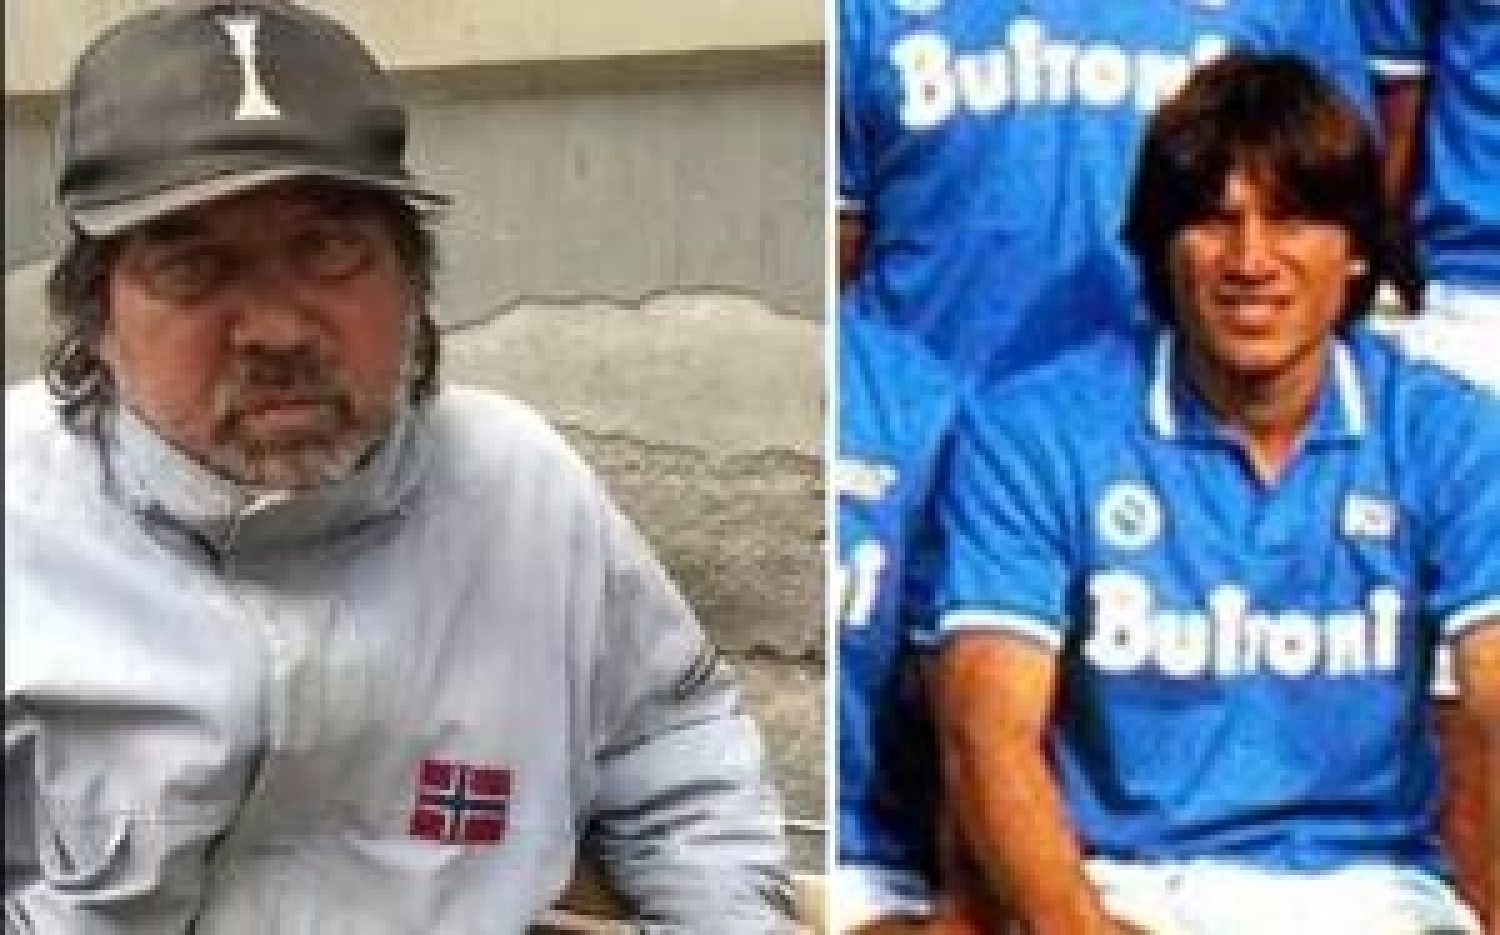 "Pietro Puzone vinse lo scudetto col Napoli di Maradona nel 1987. Oggi non ha una casa e ha bisogno di aiuto”.